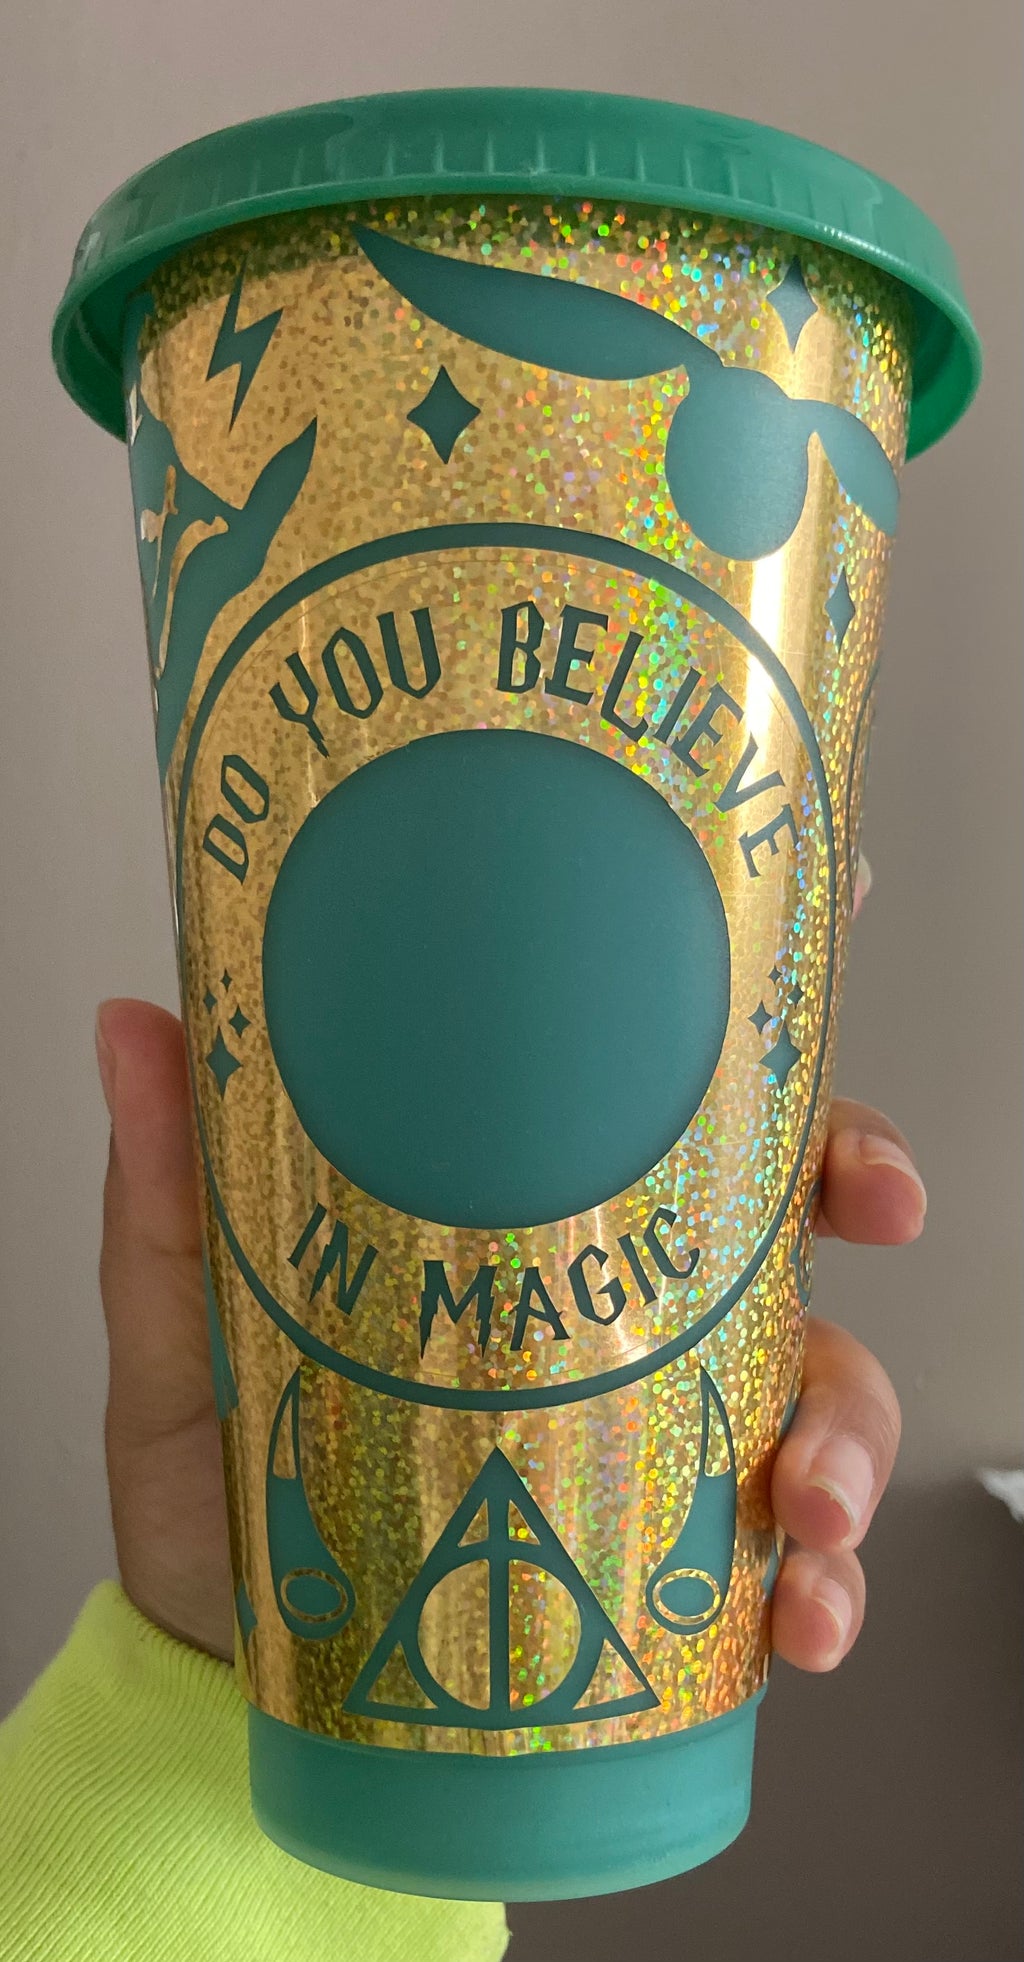 Do You believe in magic